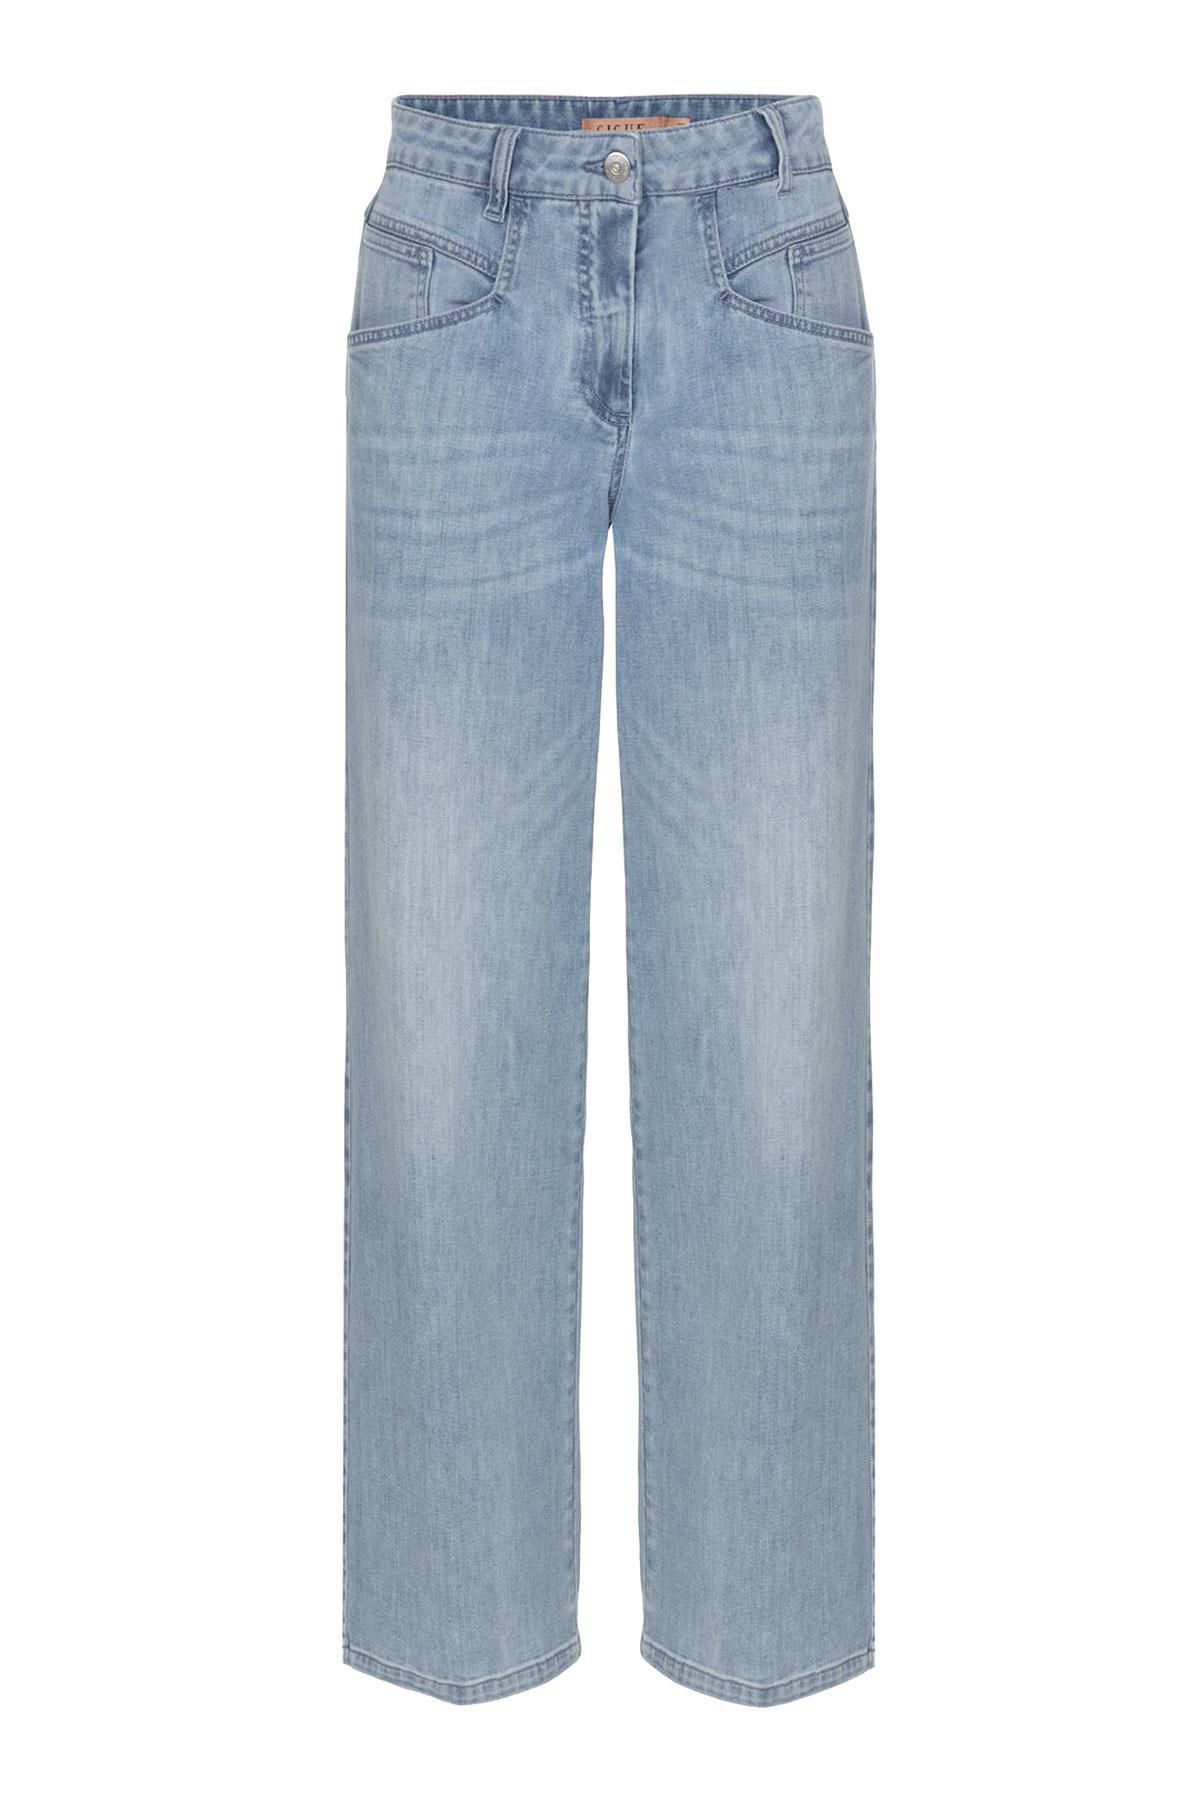 Jeans, Gigue, 179 euros, gigue.com